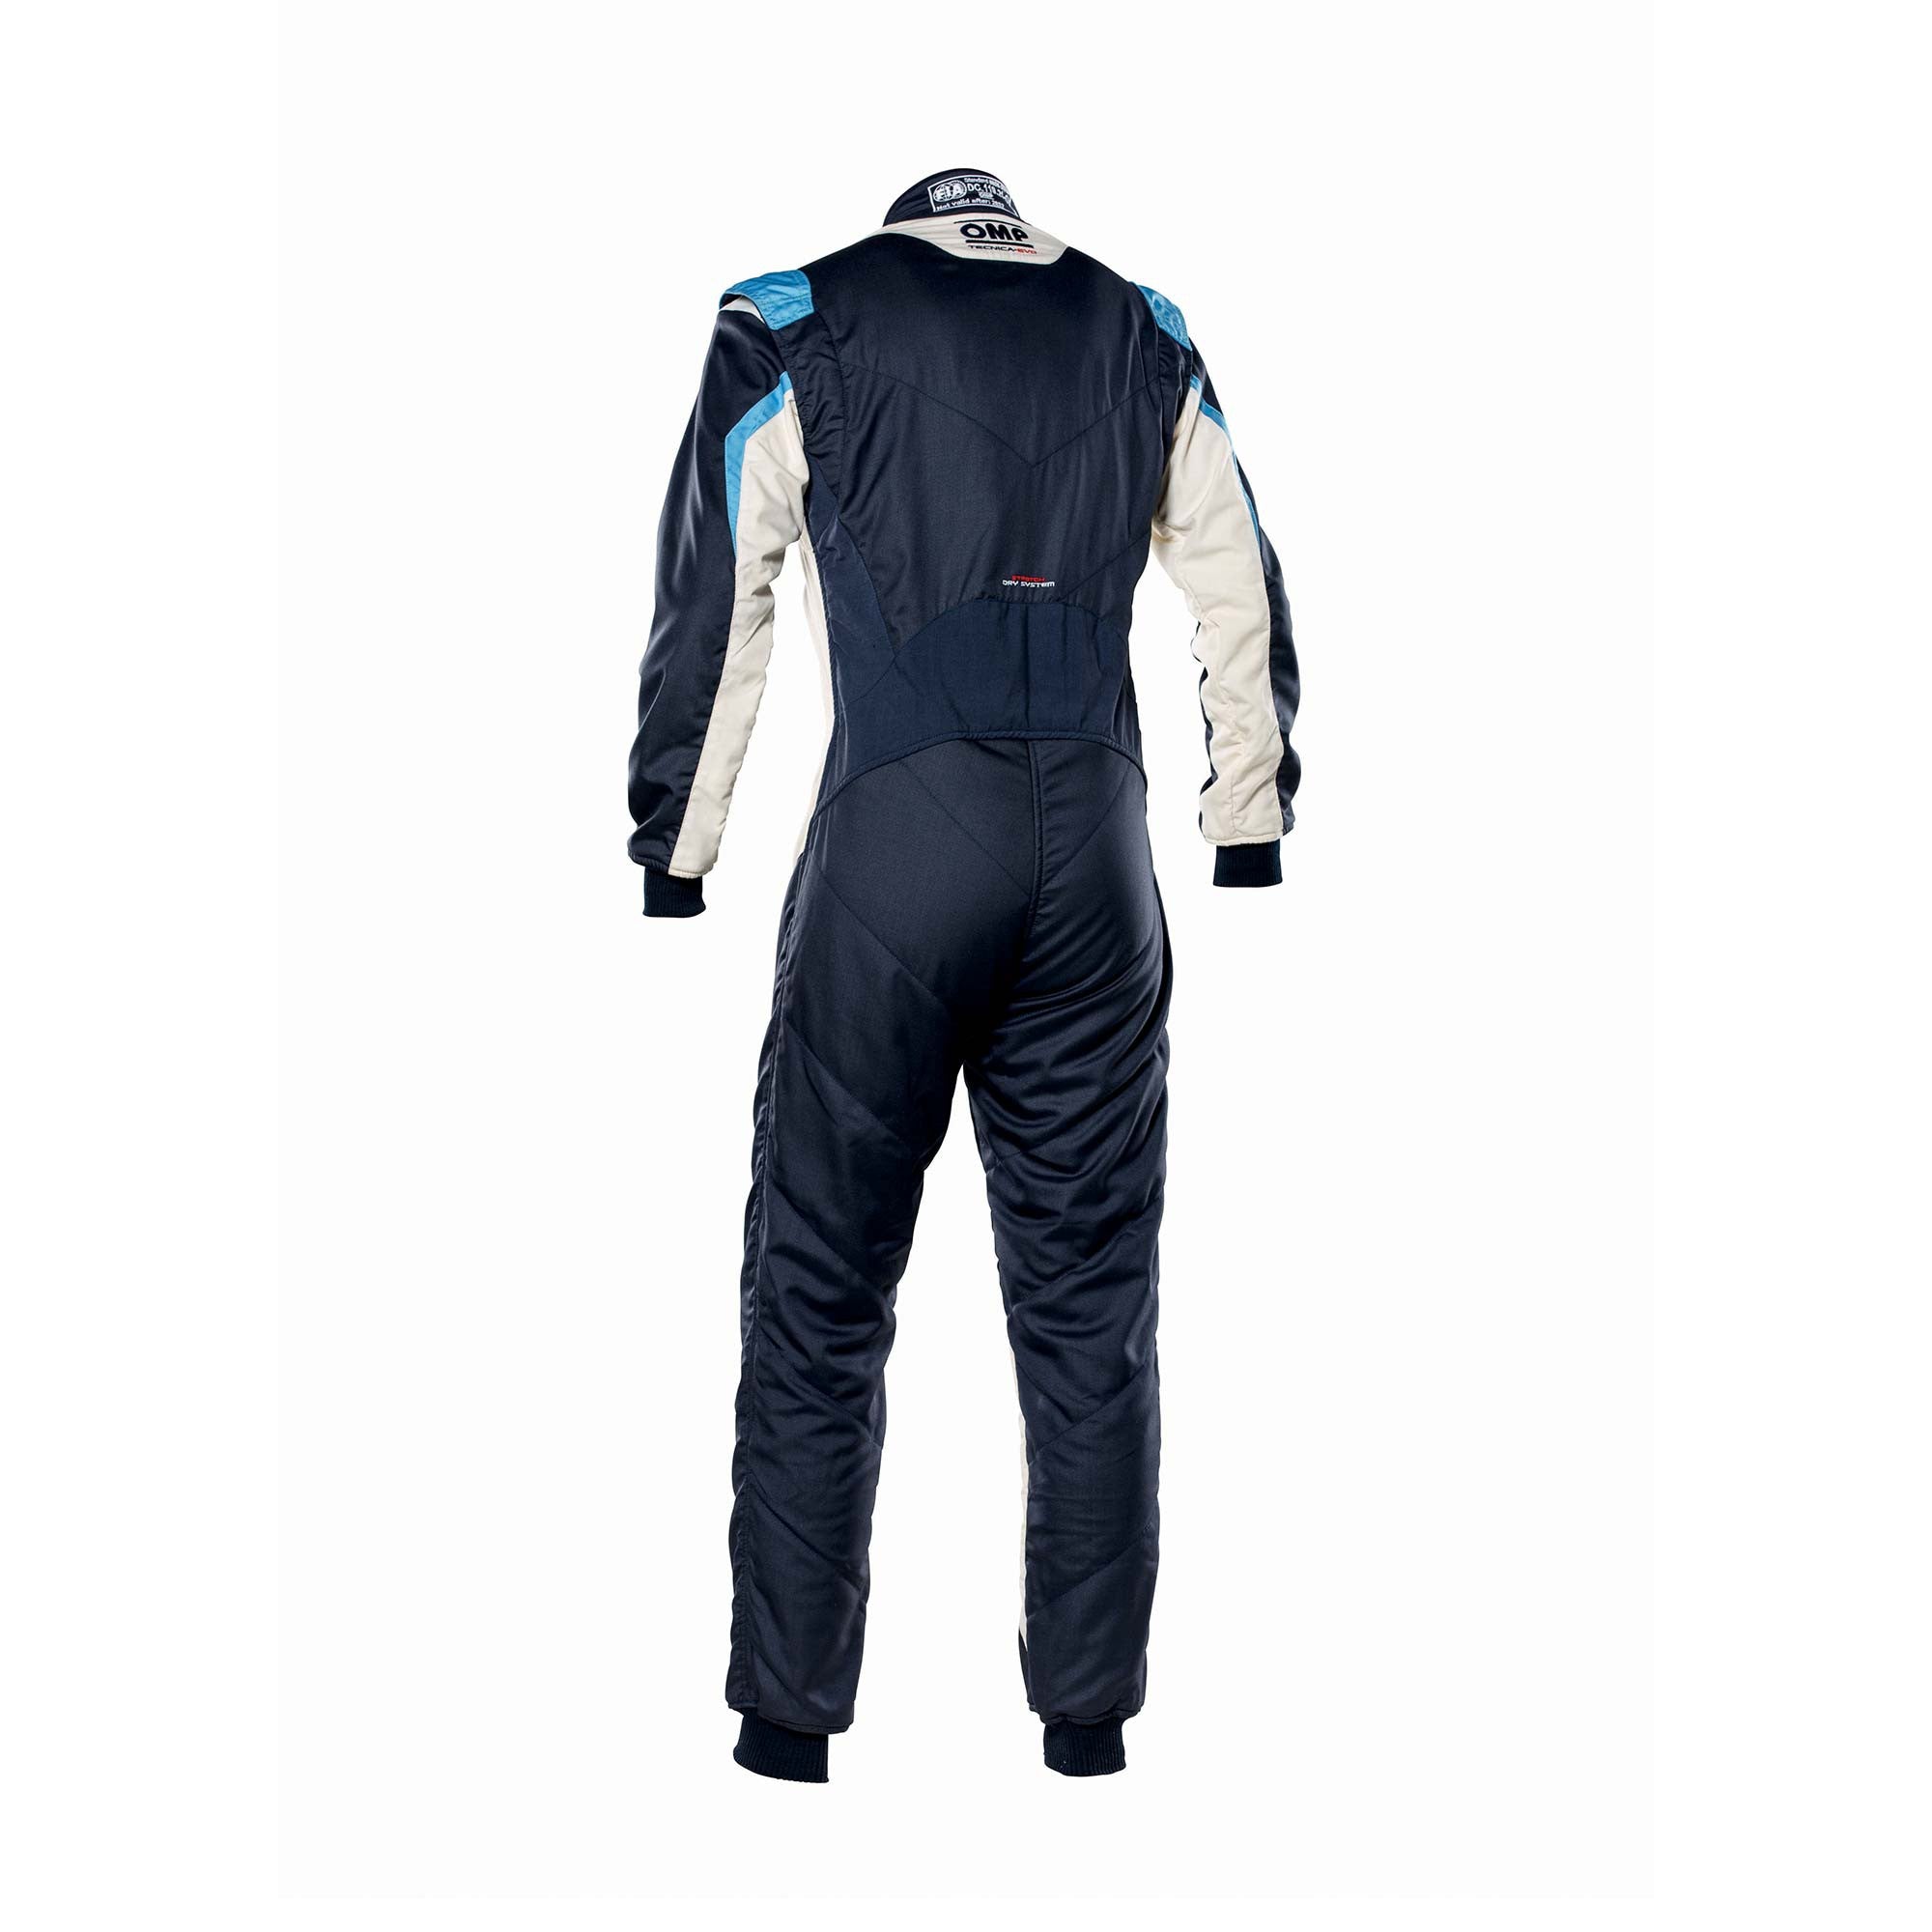 OMP IA0-1859-B01-246-52 Racing suit TECNICA EVO MY2021, FIA 8856-2018, navy blue/white/grey/cyan, size 52 Photo-1 